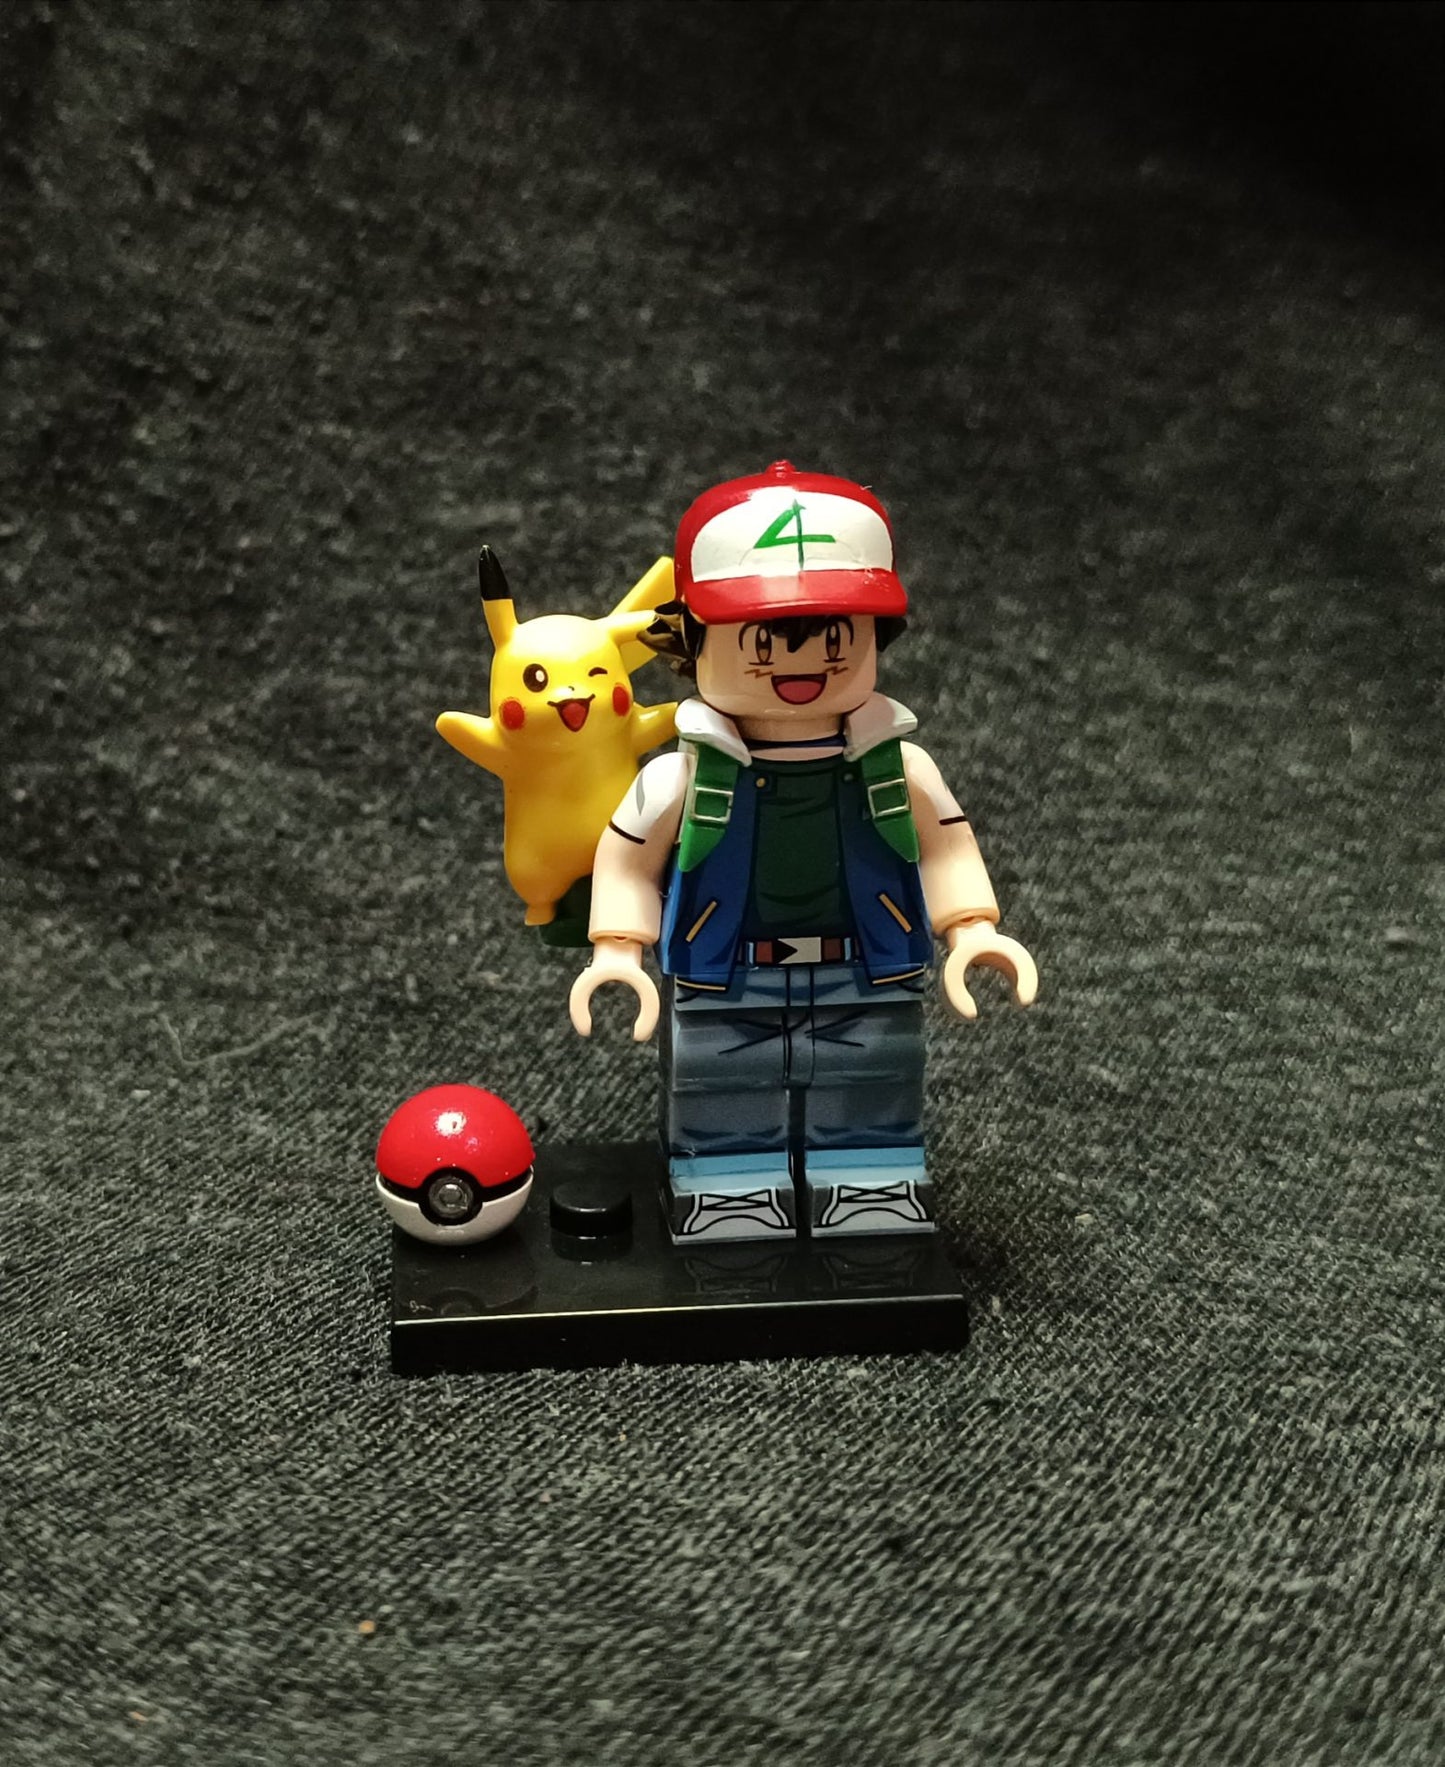 Pikachu és Ash Ketchum figura